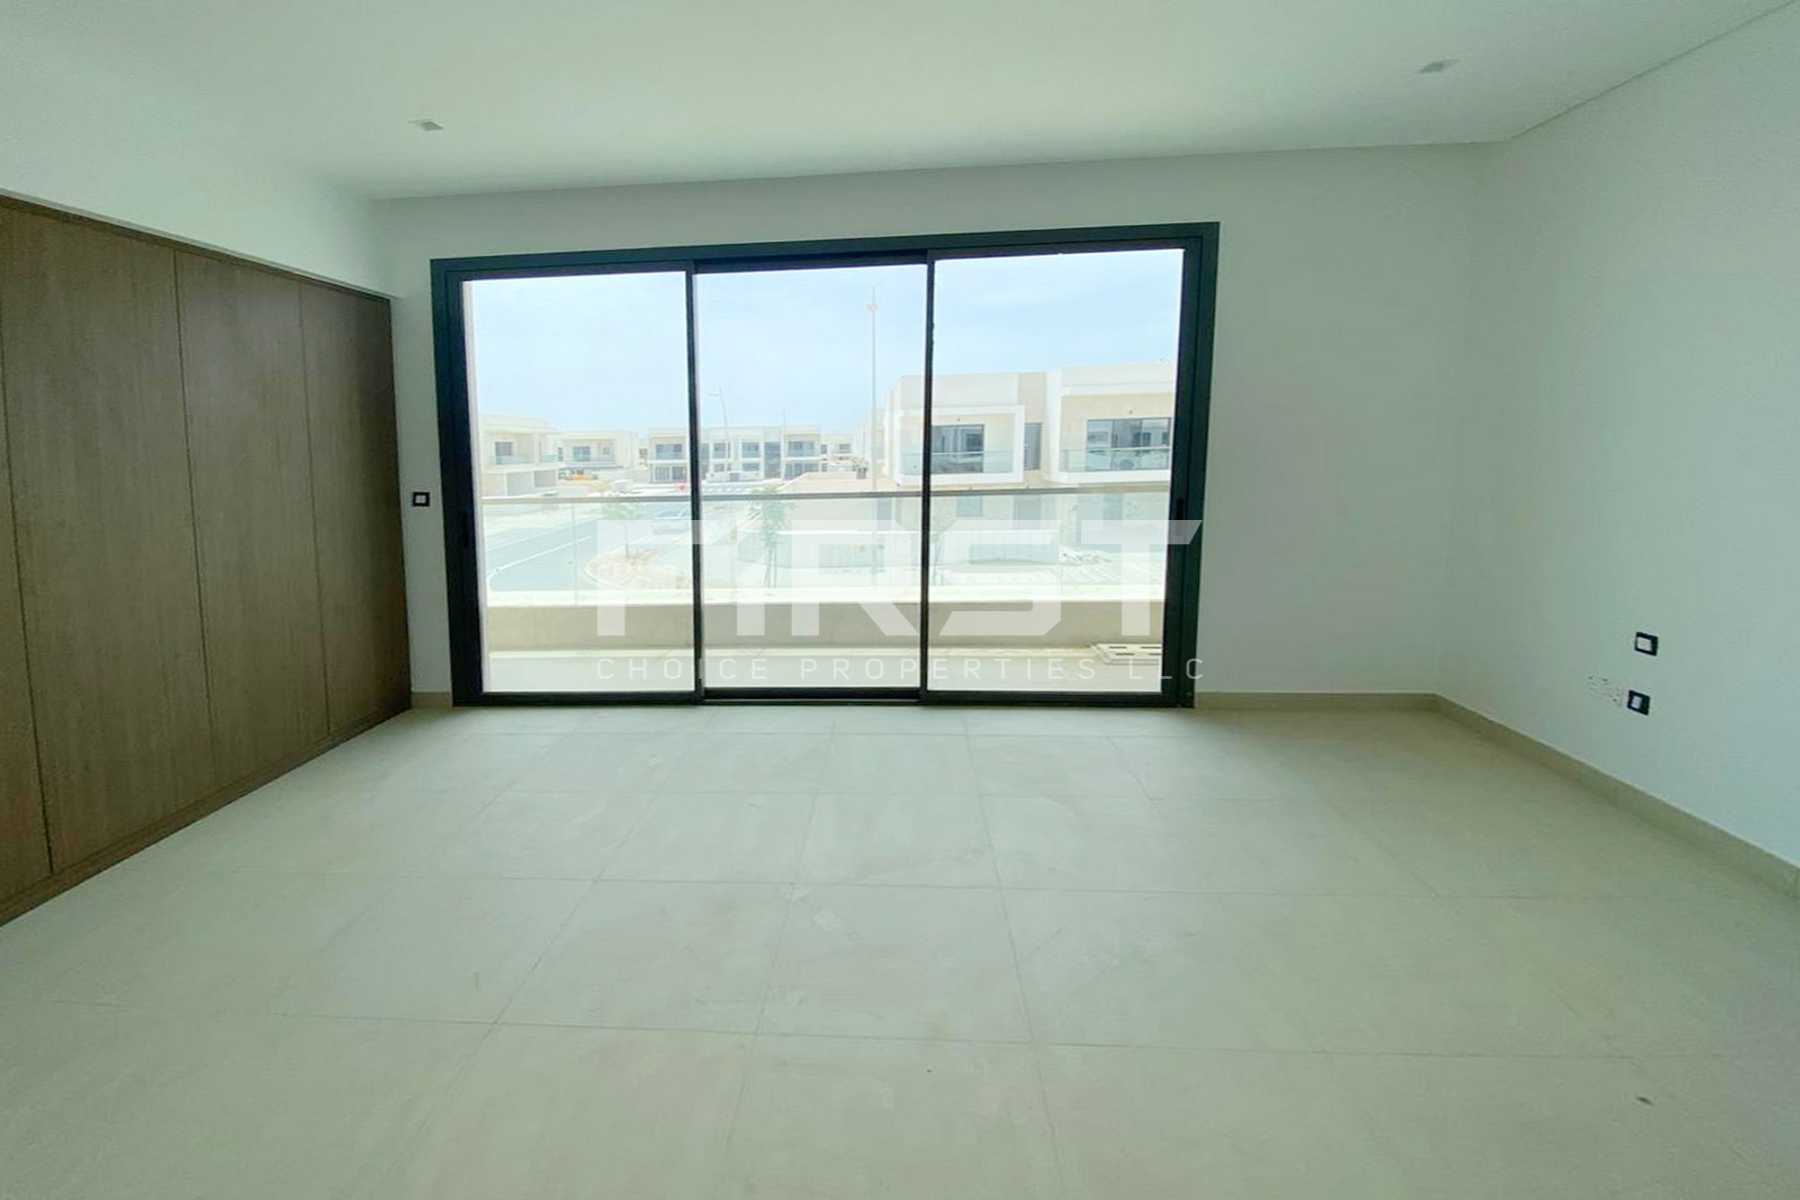 External Photo of 4 Bedroom Duplex Type 4Y in Yas Acres Yas Island Abu Dhabi UAE (4).jpg